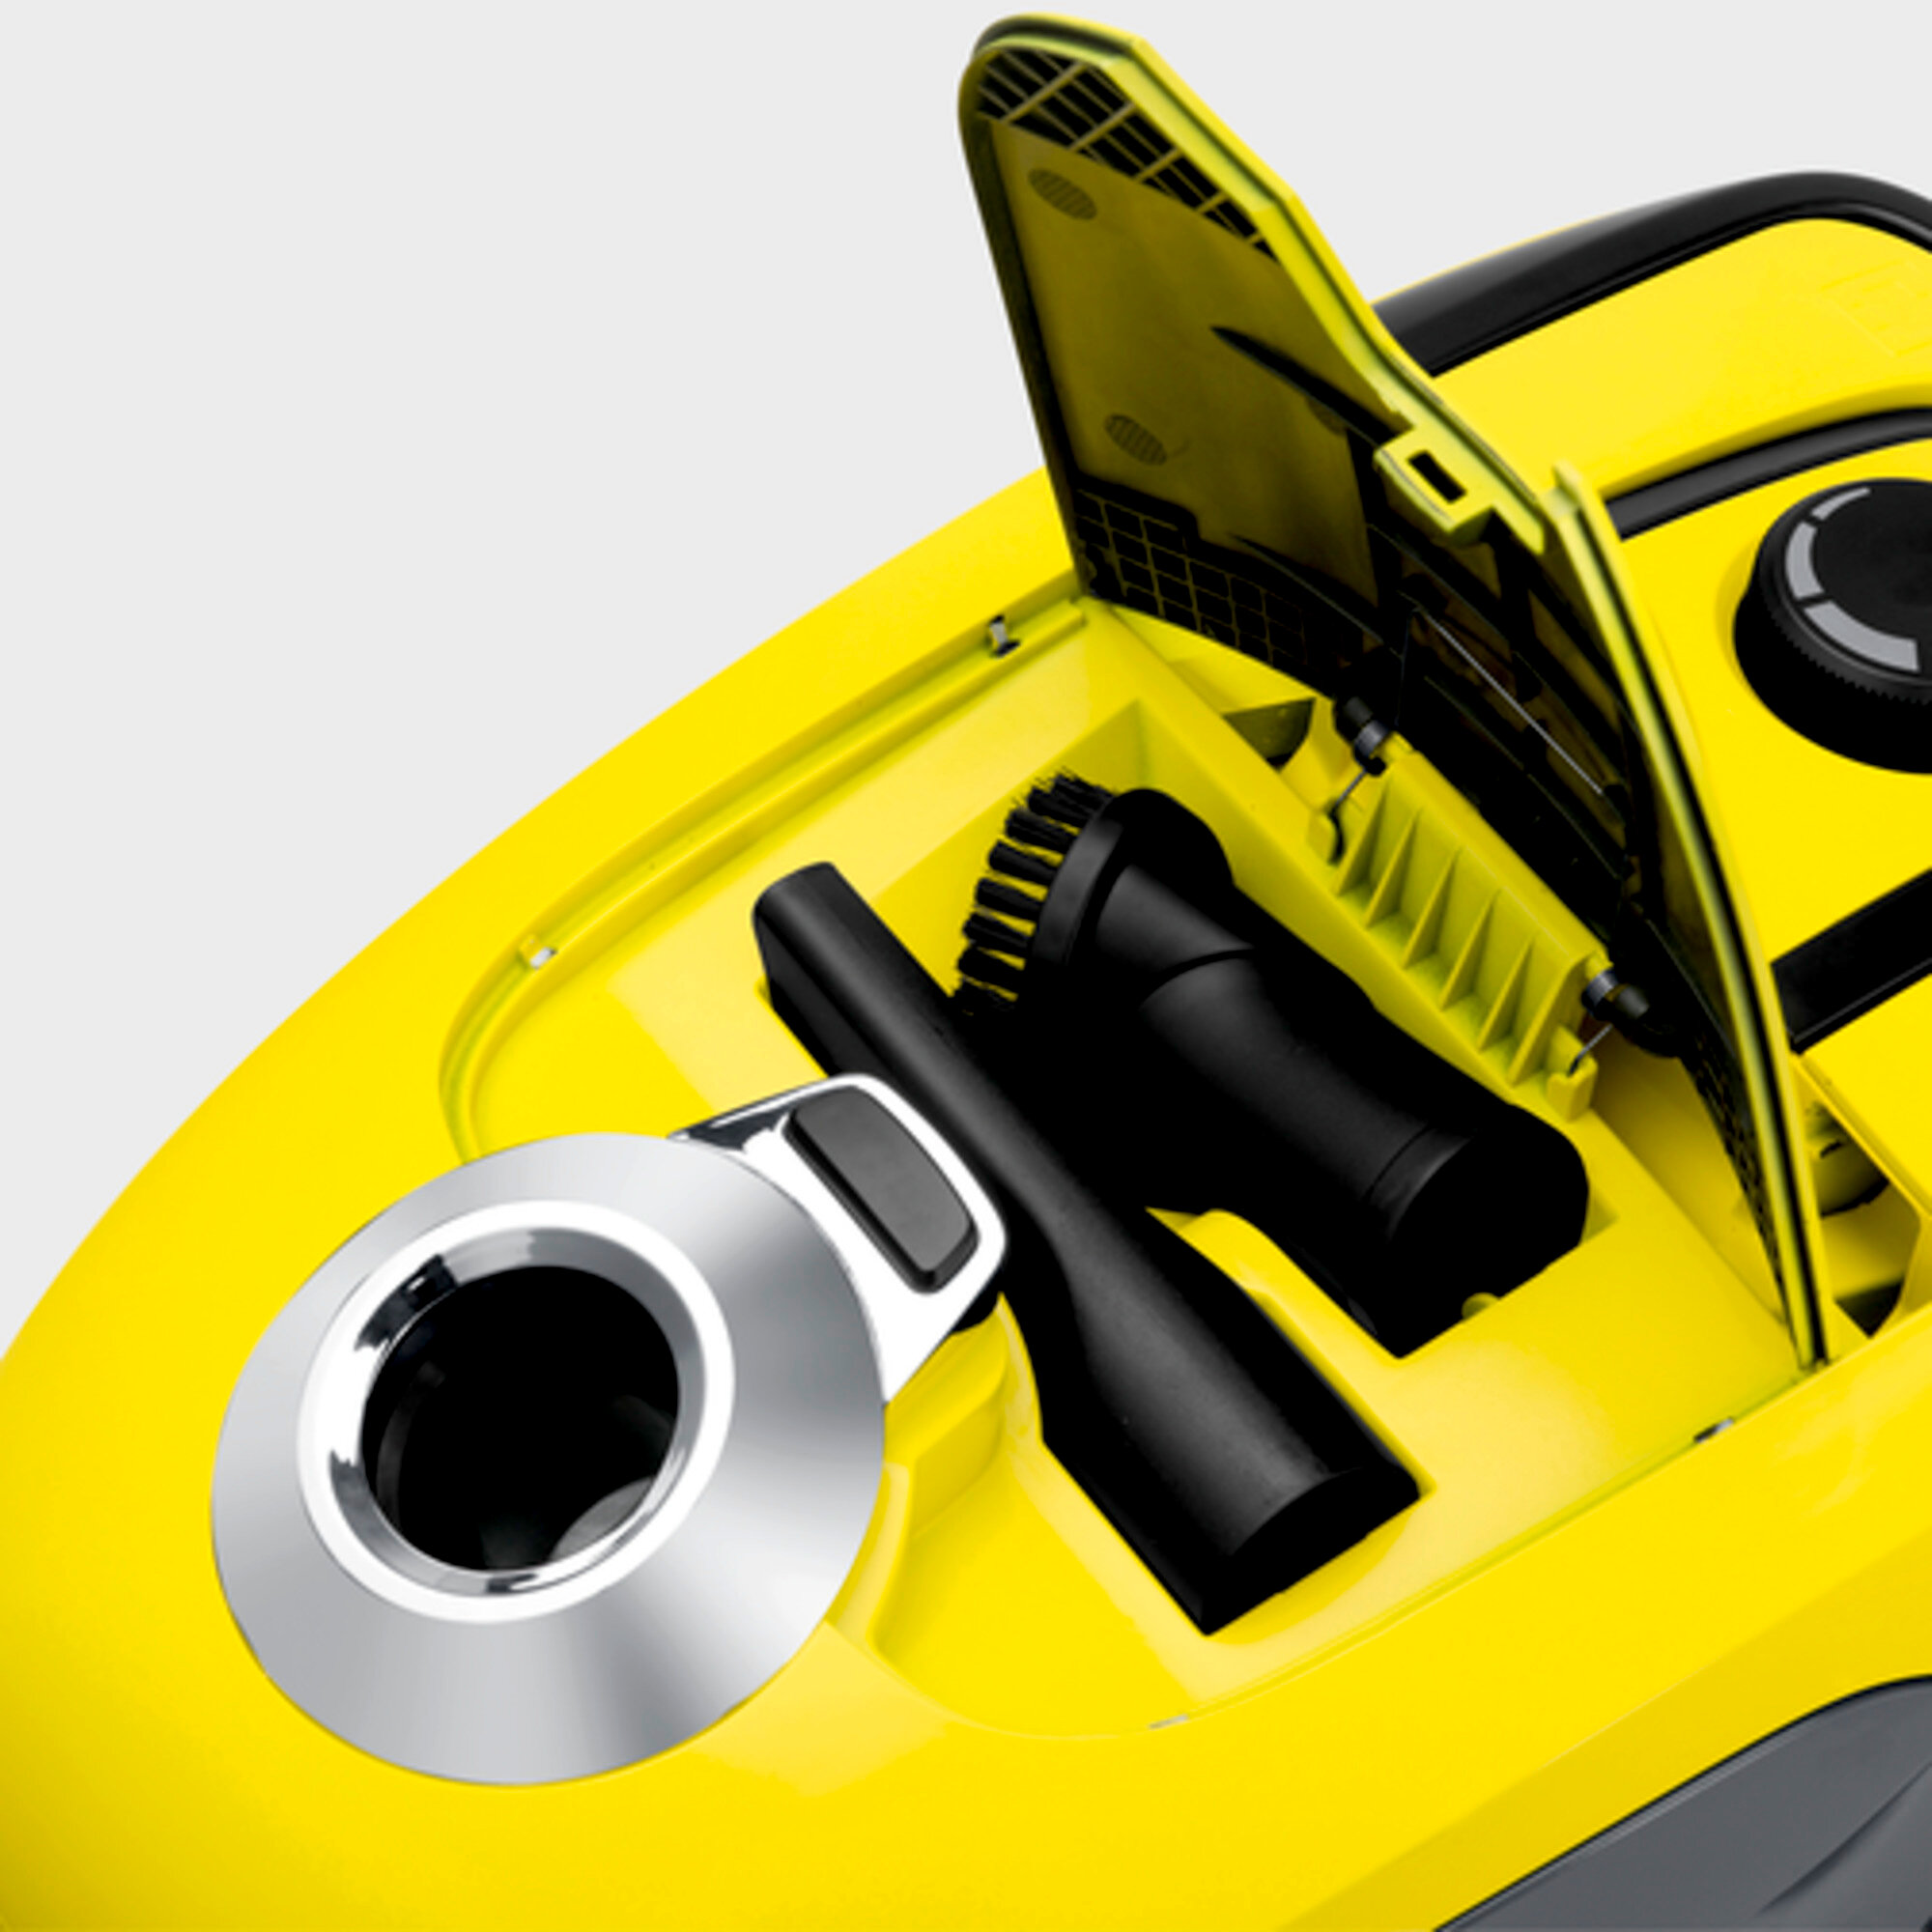 Aspirateur VC 2 (jaune): Rangement pour les accessoires